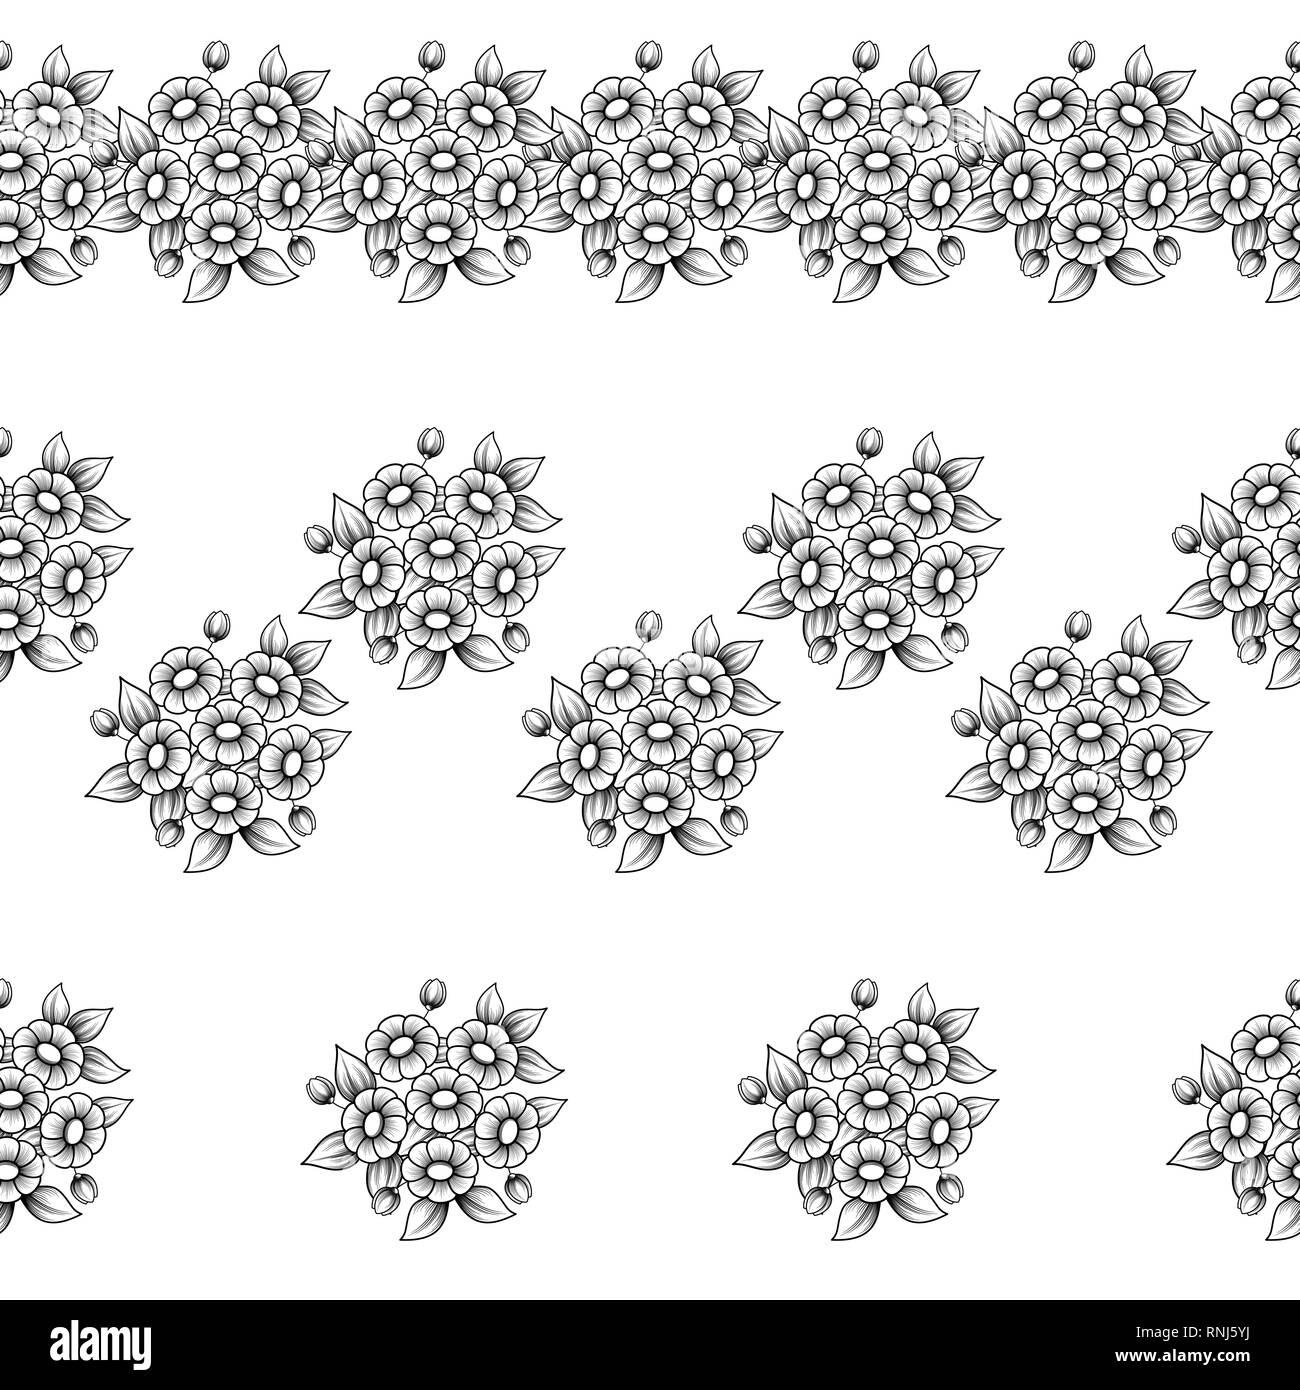 Ensemble de trois noir et blanc horizontal transparent floral frame pour modèles daisy Illustration de Vecteur